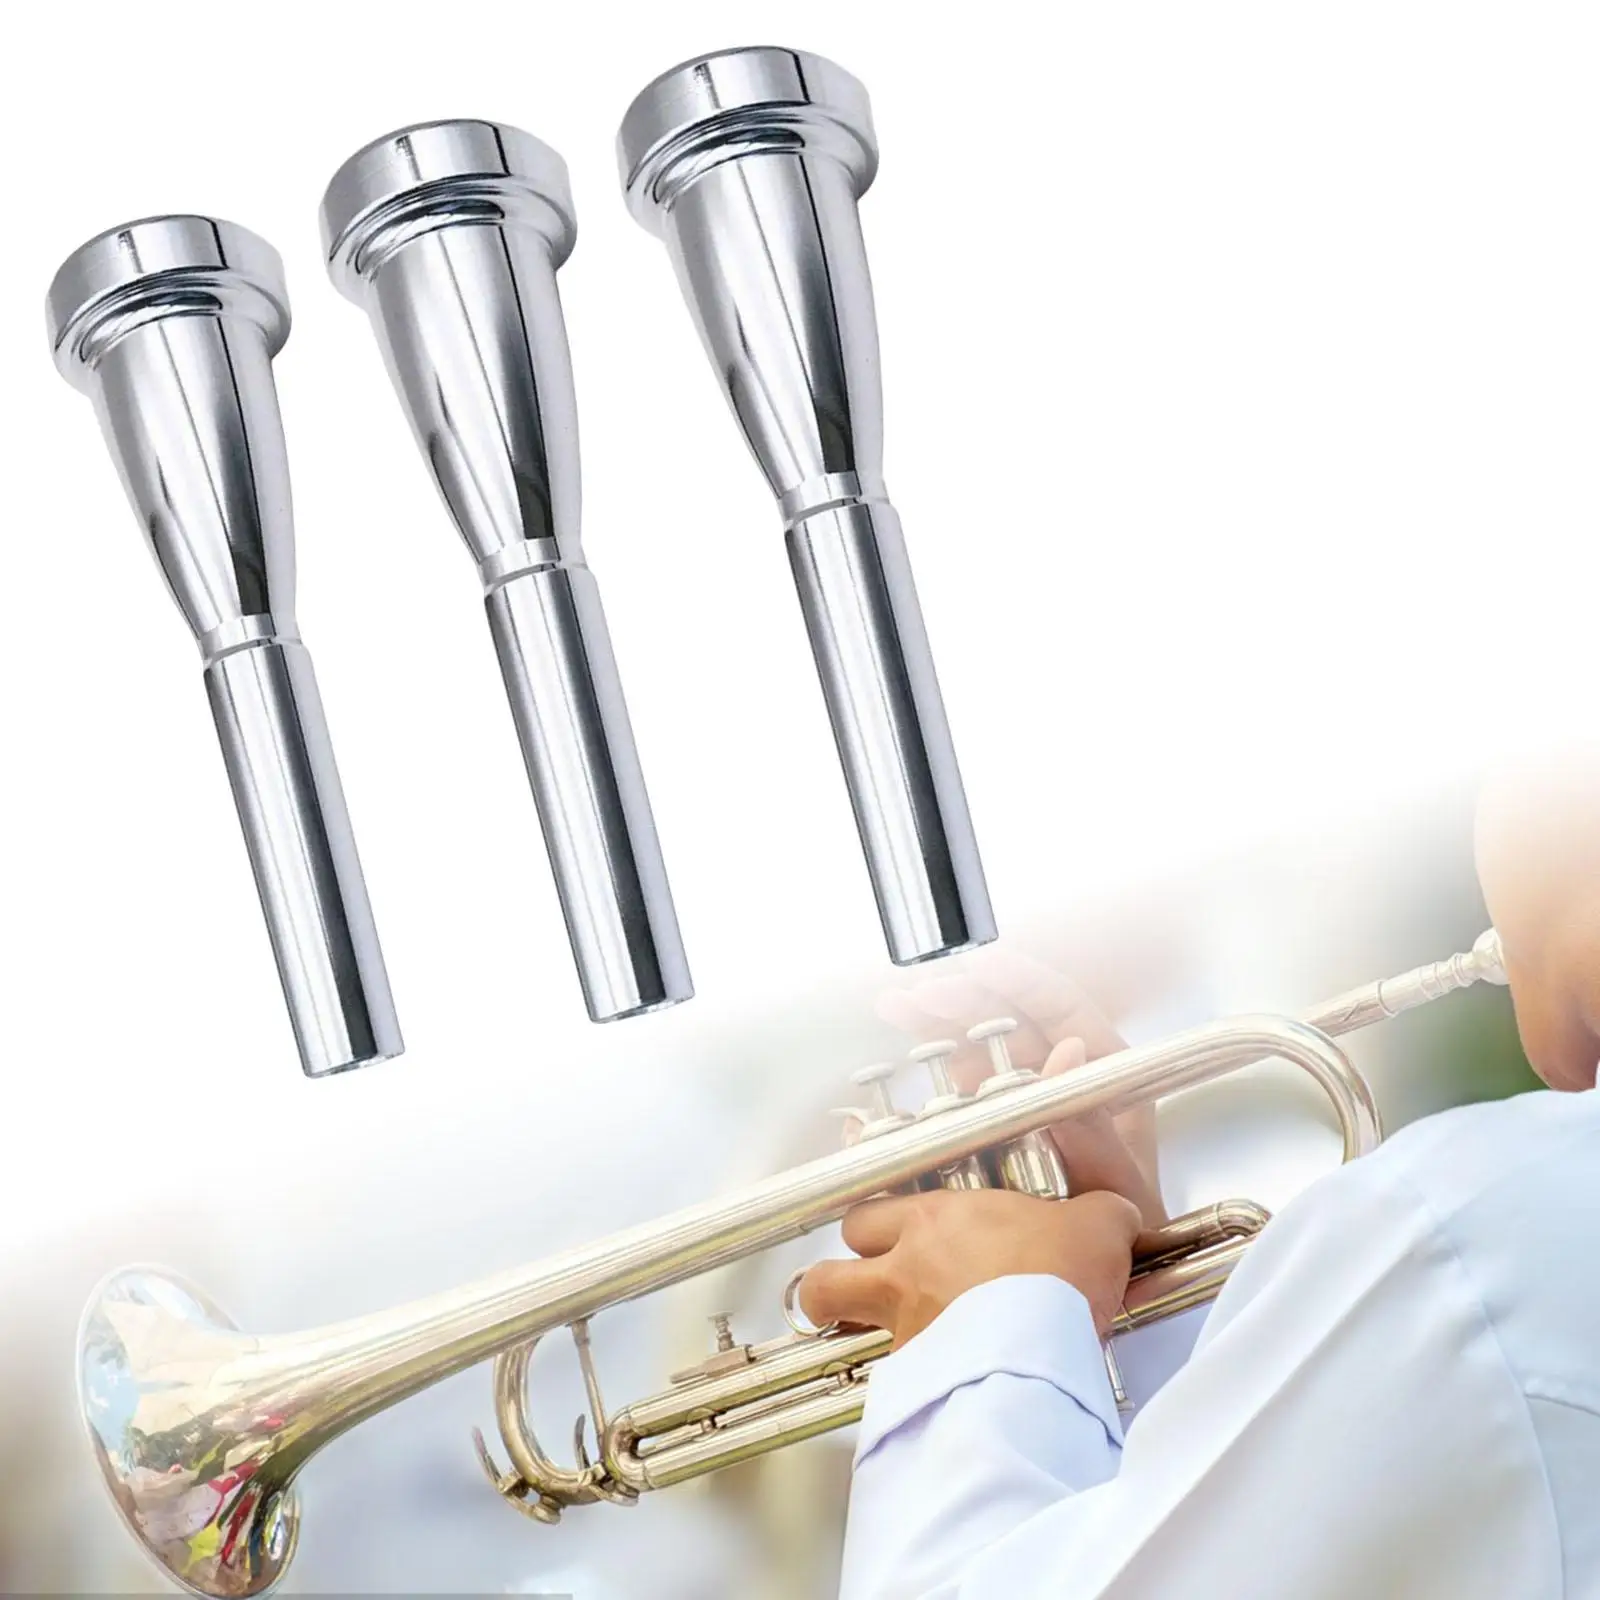 3 Pieces Professional Trumpet Mouthpiece Replacement Trumpet Parts 3C 5C 7C Size